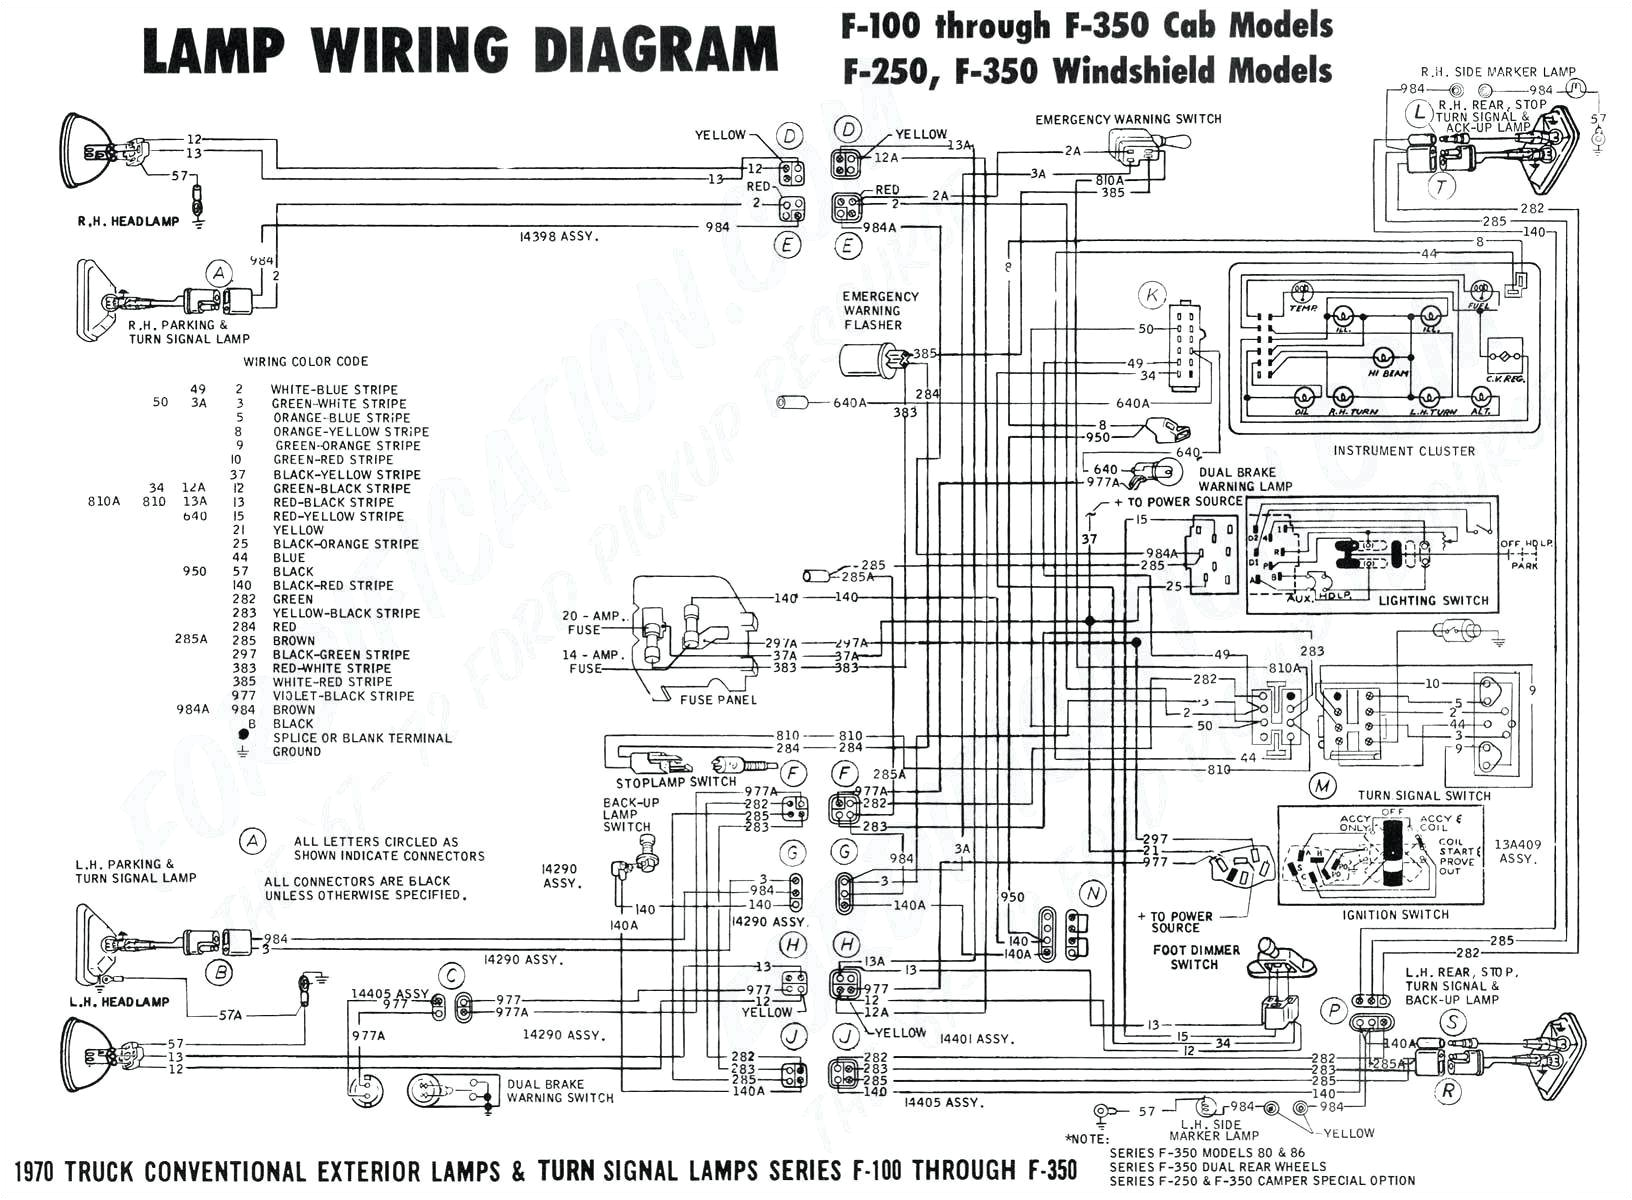 3 way dimmer wiring unique wiring a schematic box 3 everything wiring diagram of 3 way dimmer wiring jpg